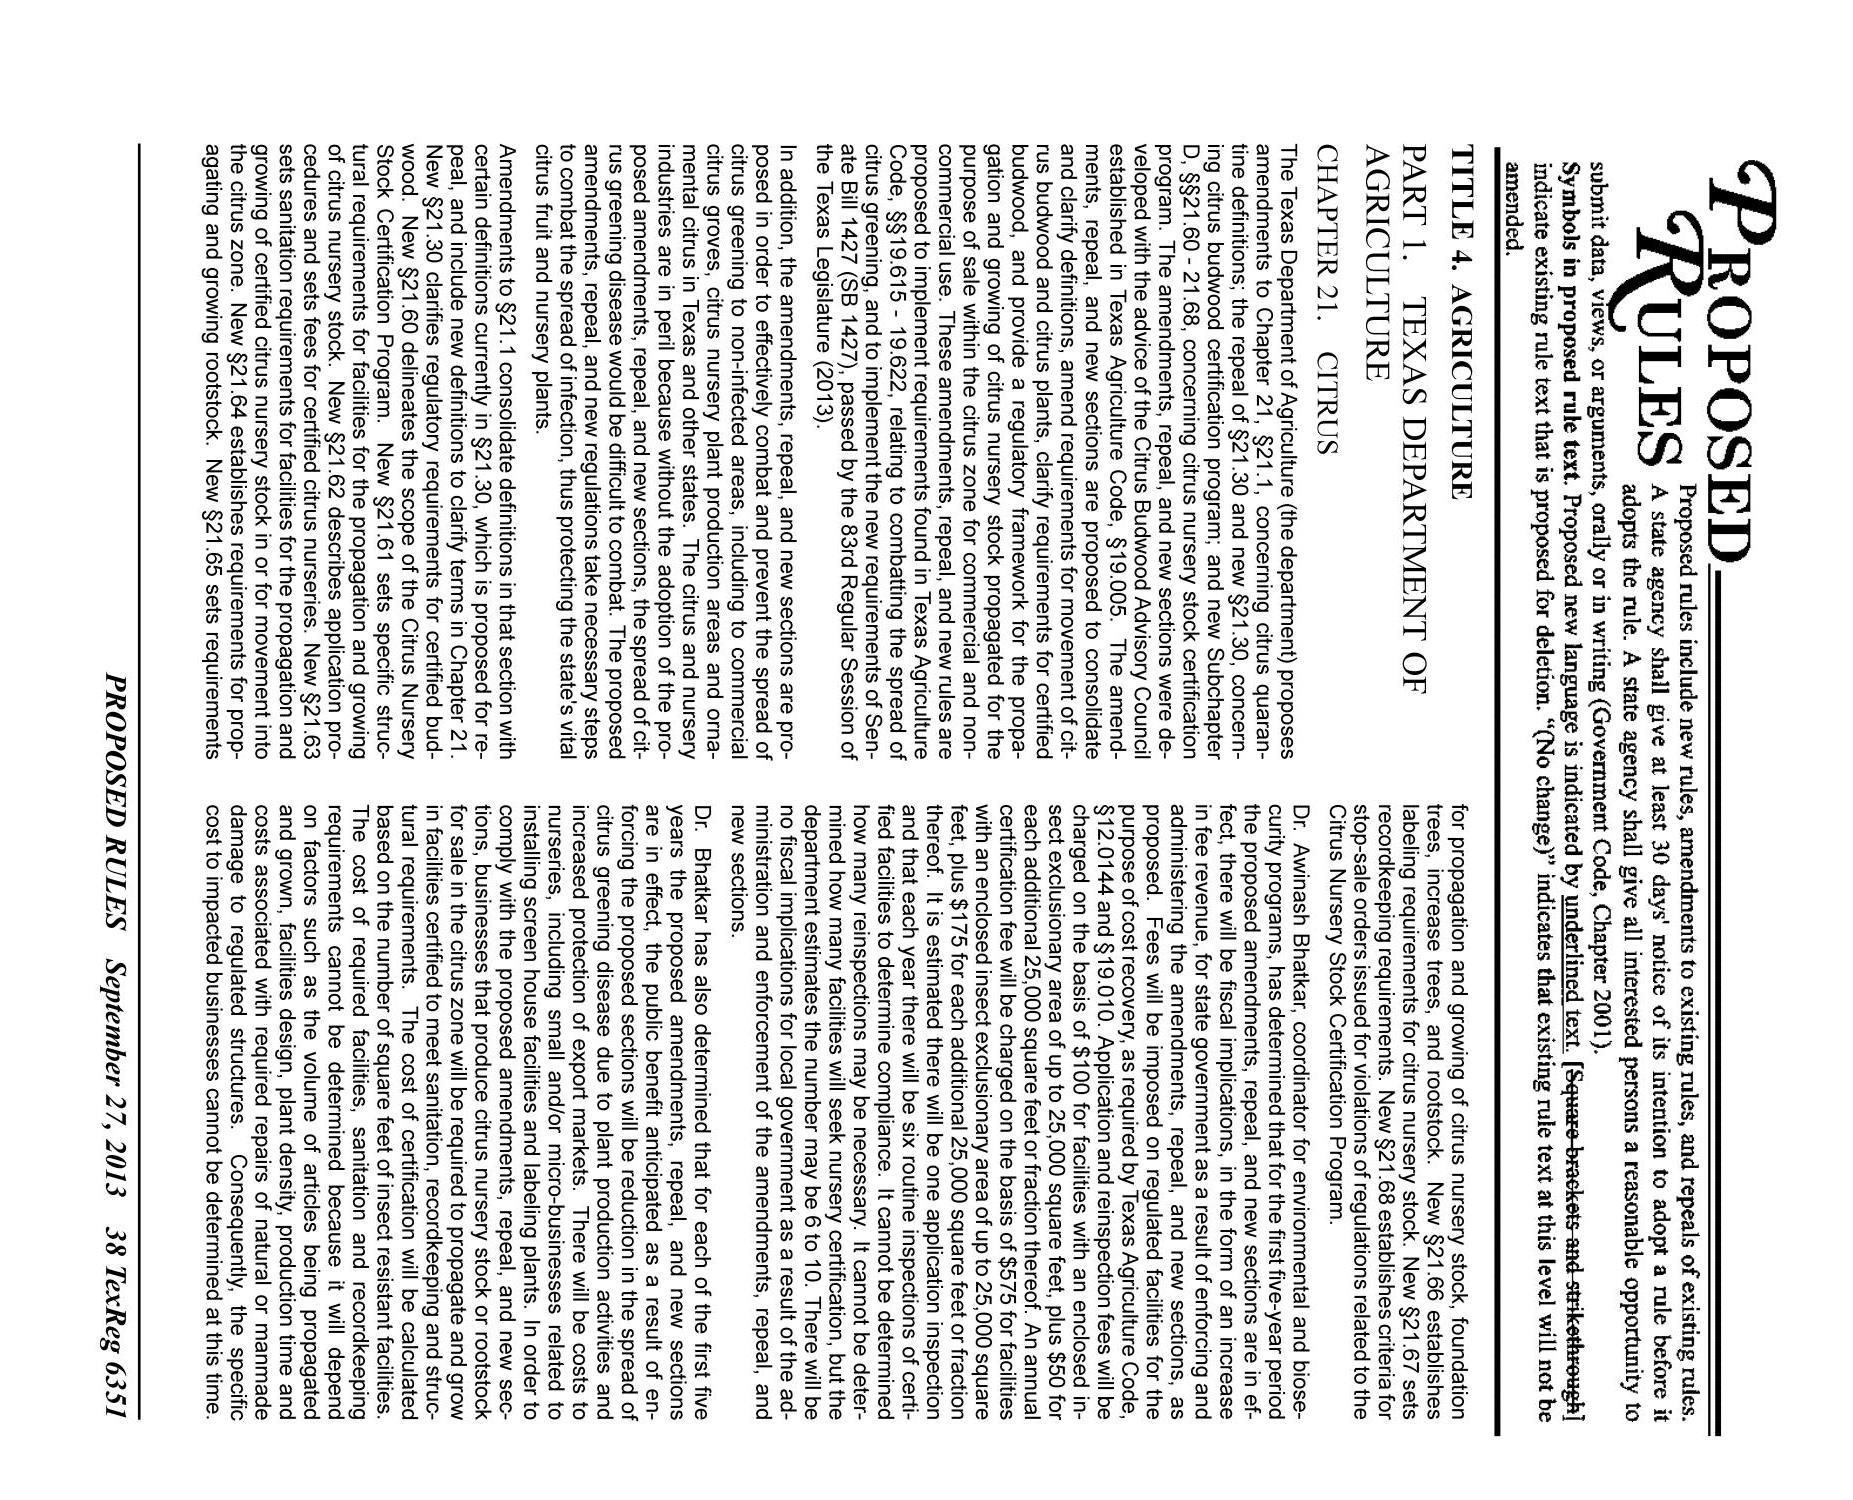 Texas Register, Volume 38, Number 39, Pages 6341-6746, September 27, 2013
                                                
                                                    6351
                                                